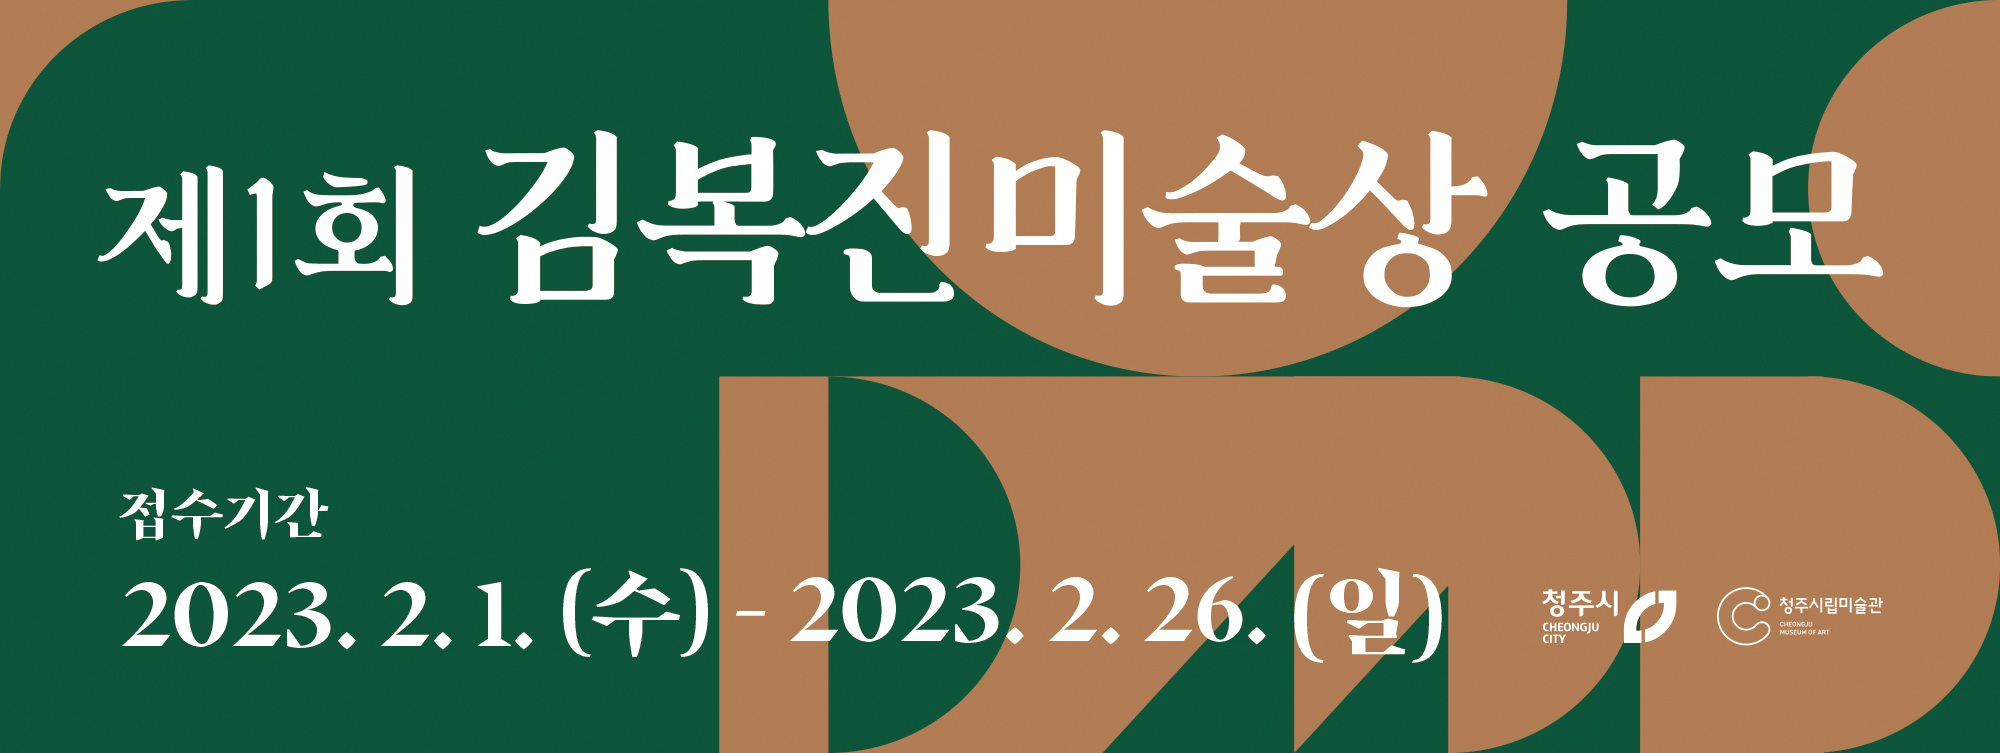 2023년 제1회 김복진미술상 공모